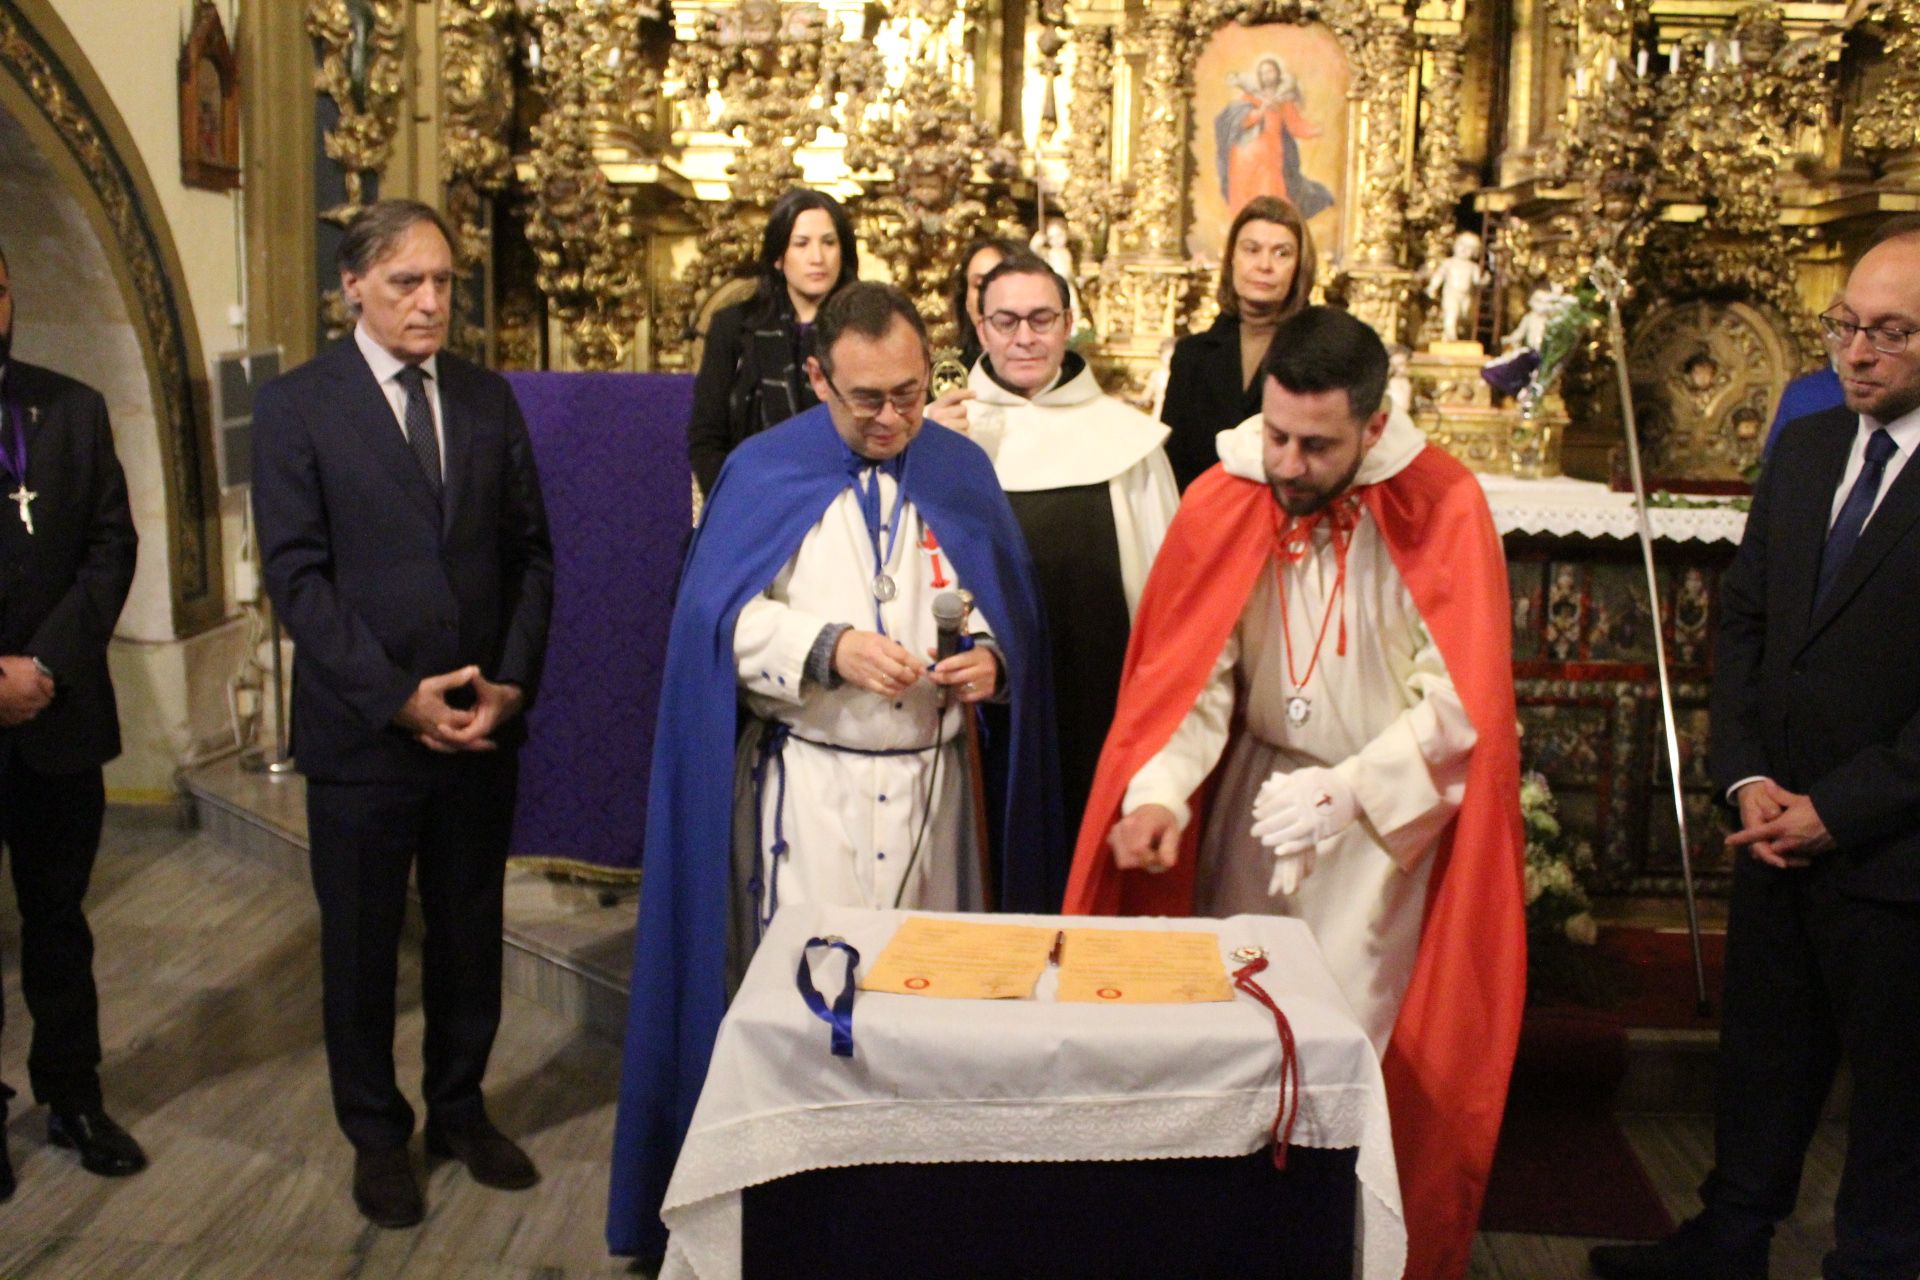  El alcalde de Salamanca, Carlos García Carbayo, asiste al acto de hermanamiento entre la Ilustre Cofradía de la Santa Vera Cruz y la Hermandad del Santísimo Cristo de la Expiración-Cofradía del Silencio de Ciudad Rodrigo.